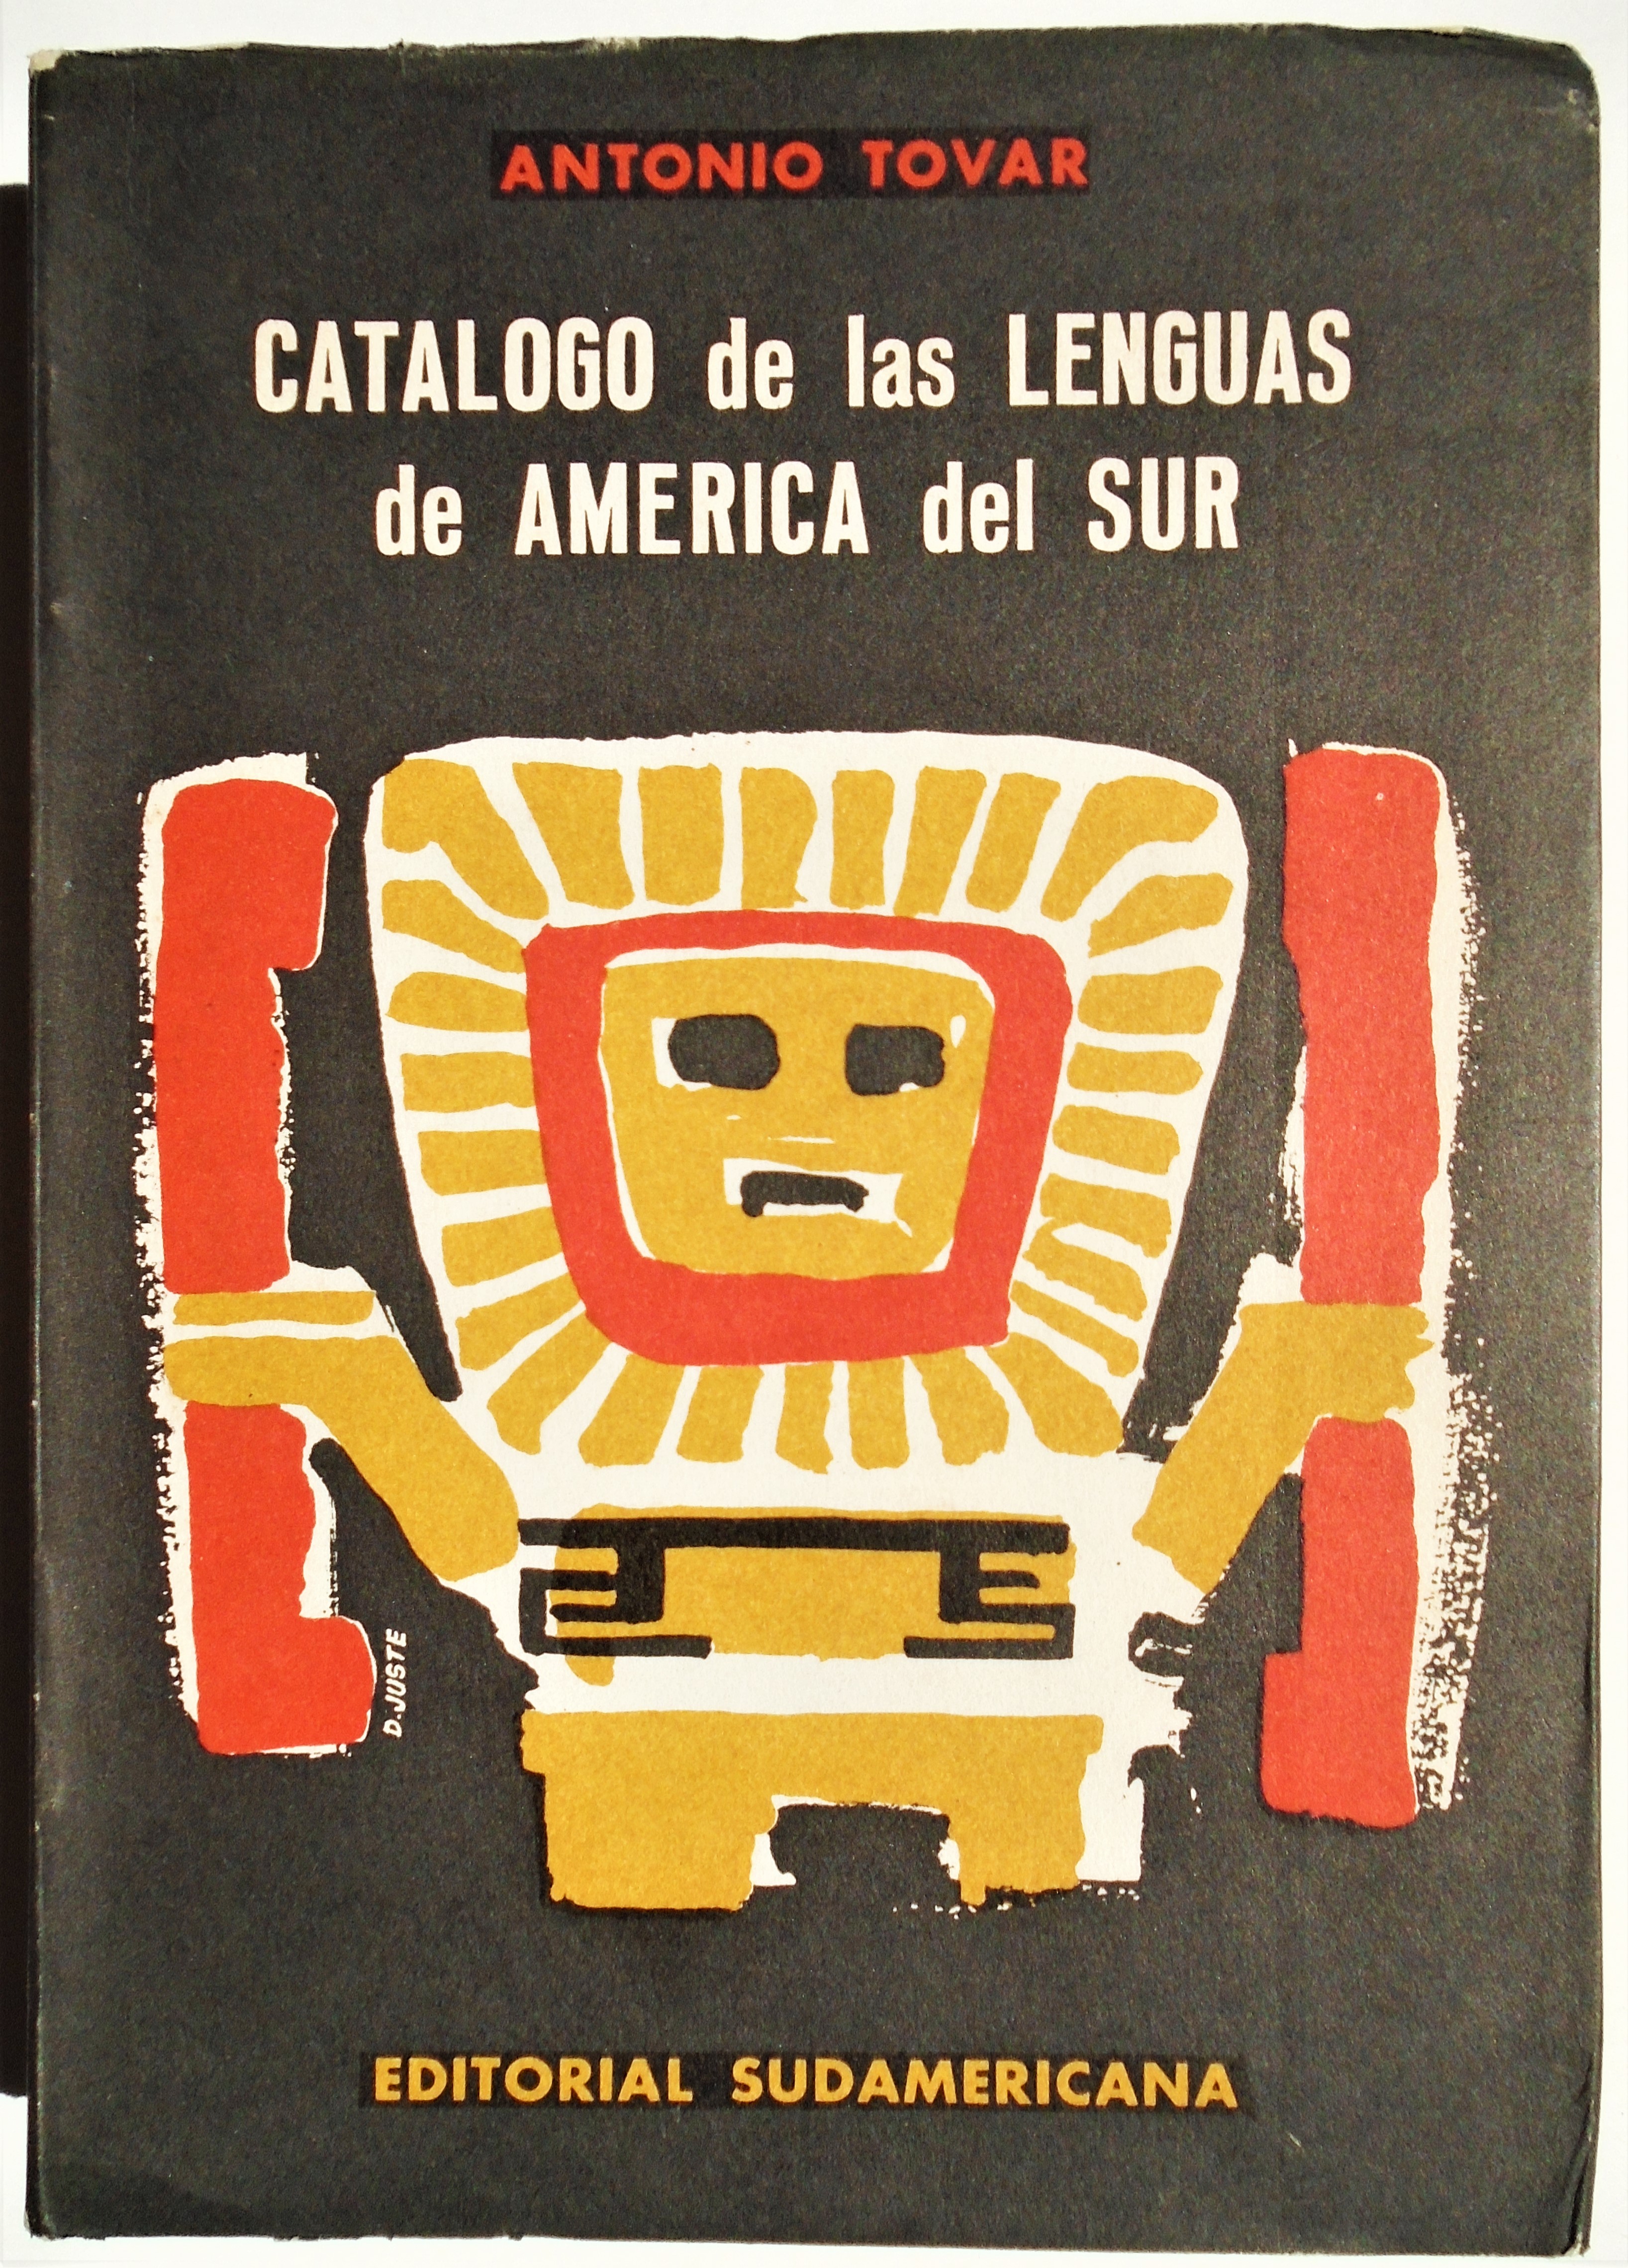 Antonio Tovar - Catálogo de las lenguas de américa del sur